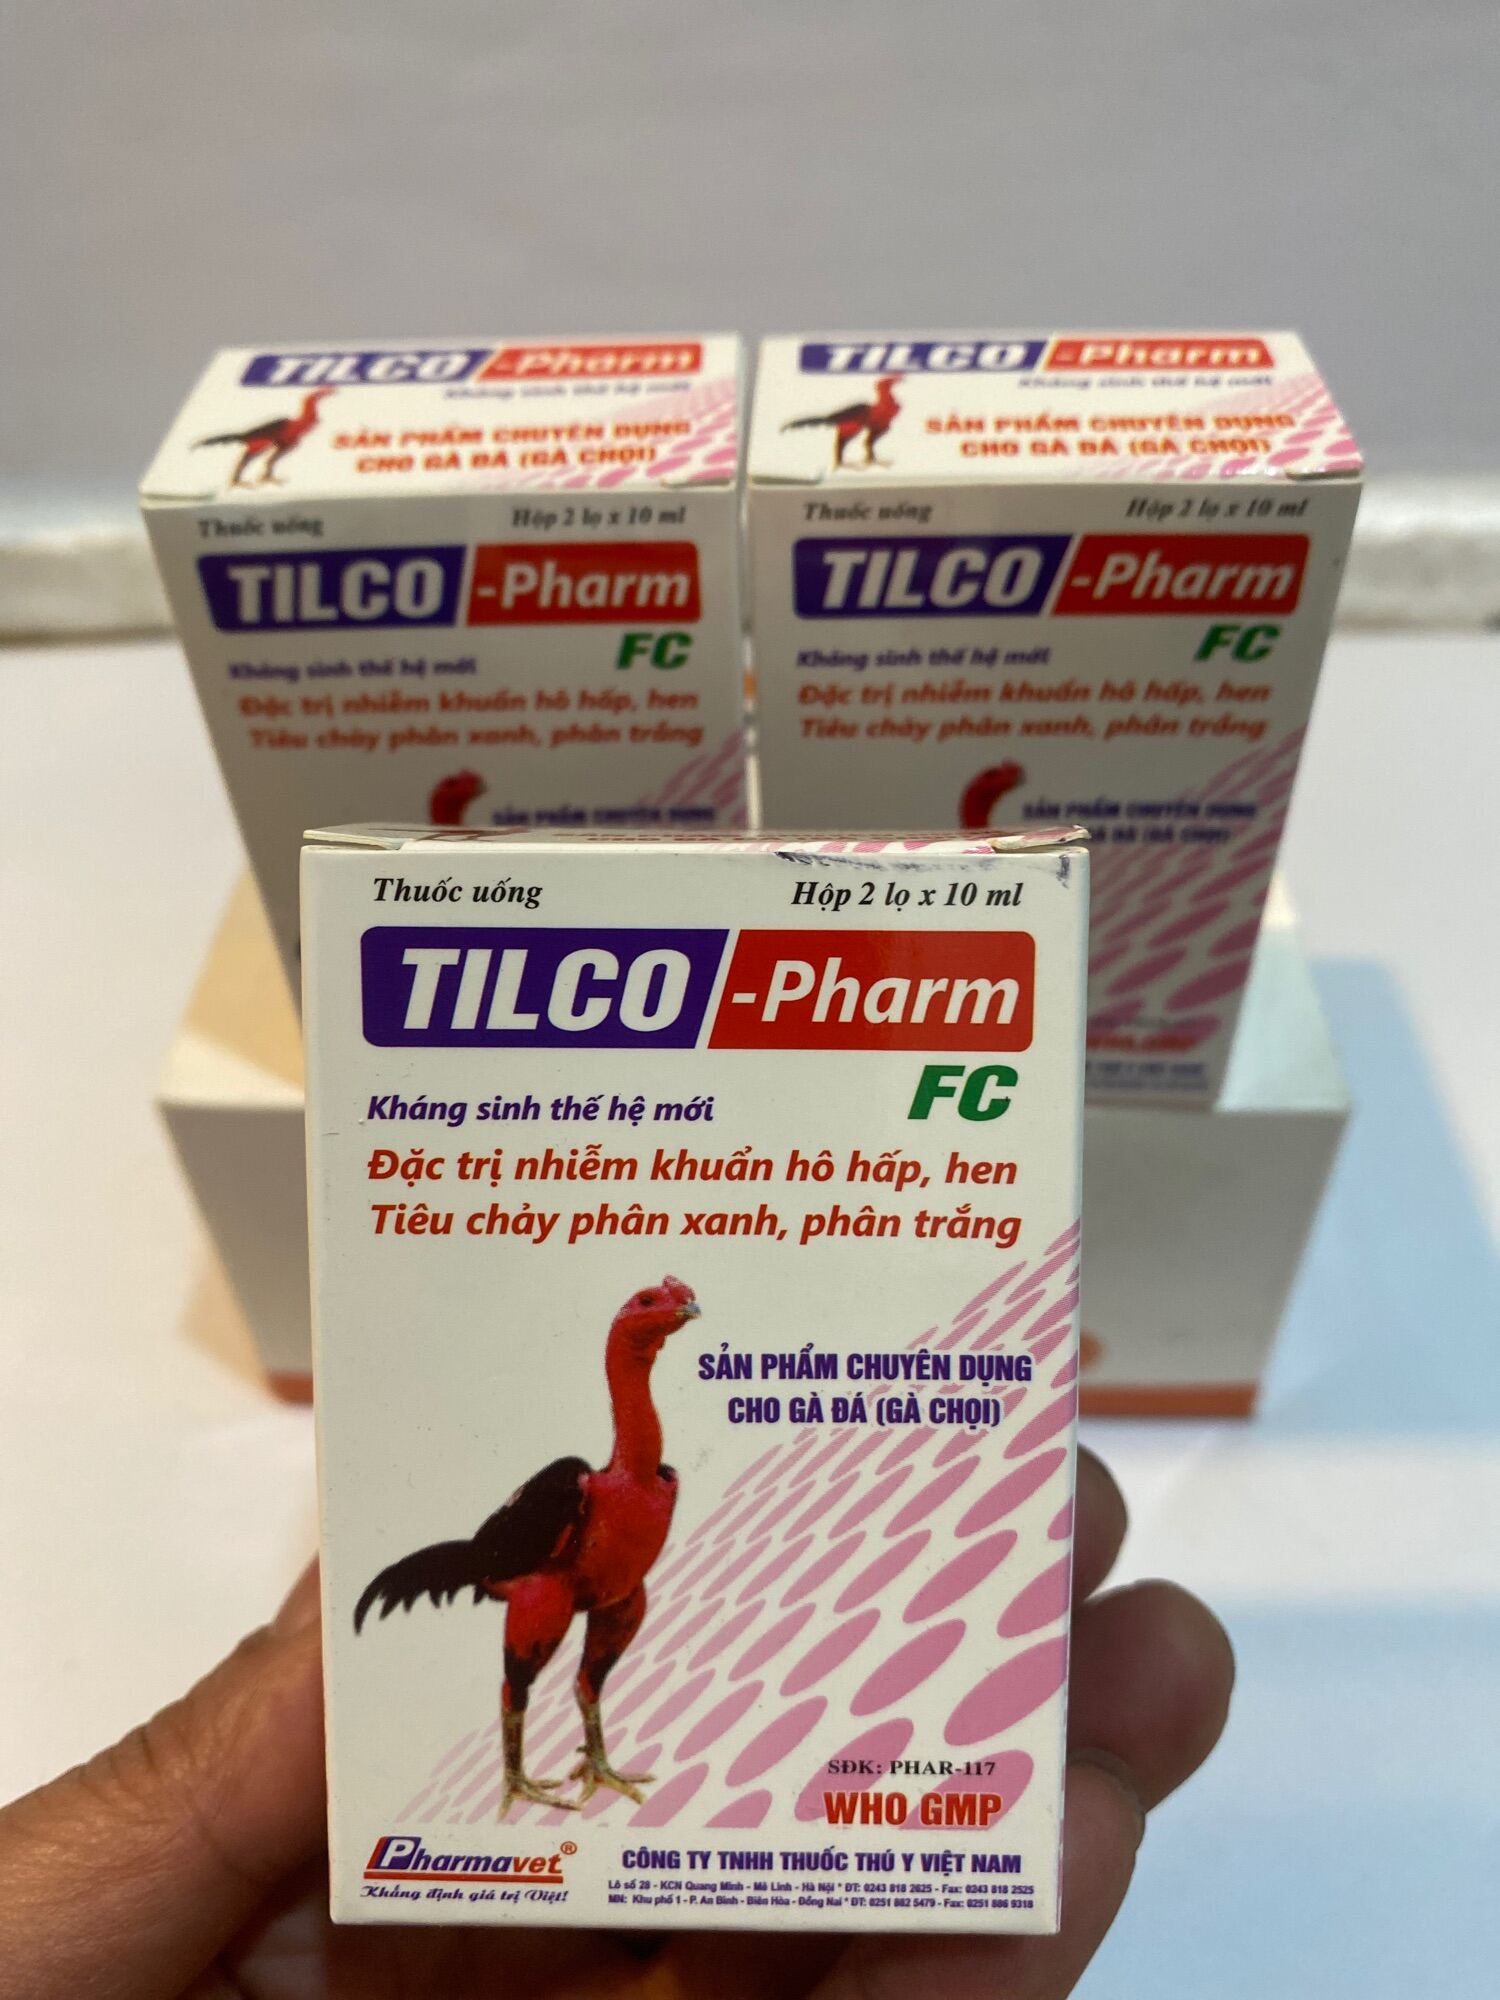 Tilco-Pharm(1hộp-2lọ 10ml) Hen khẹc, vảy mỏ, phân xanh phân trắng